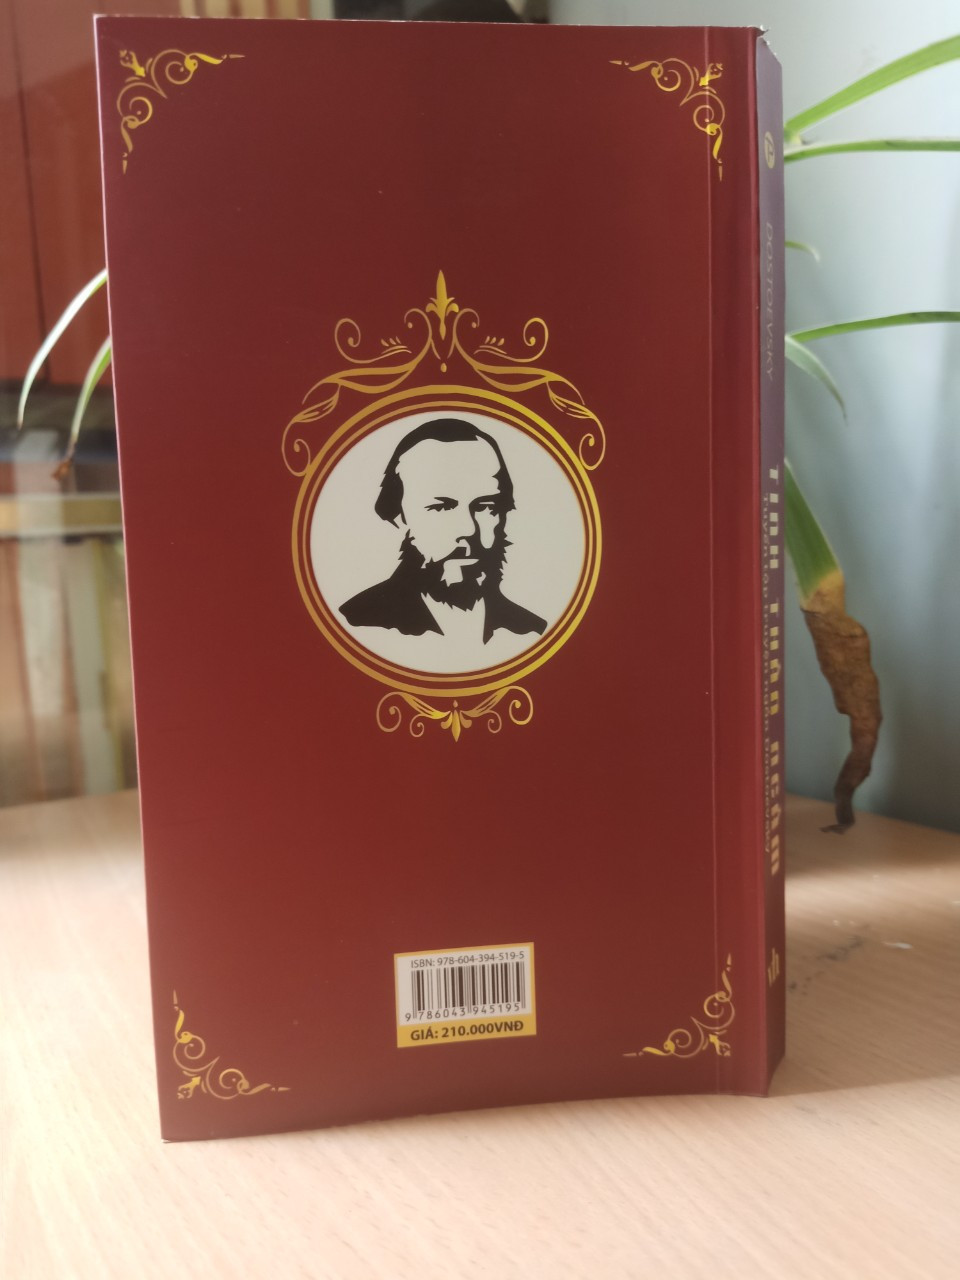 TINH THẦN NGẦM - Fyodor Mikhailovich Dostoevsky -  Nguyễn Thị Hồng Nhung, Trường Phương dịch - (bìa mềm)